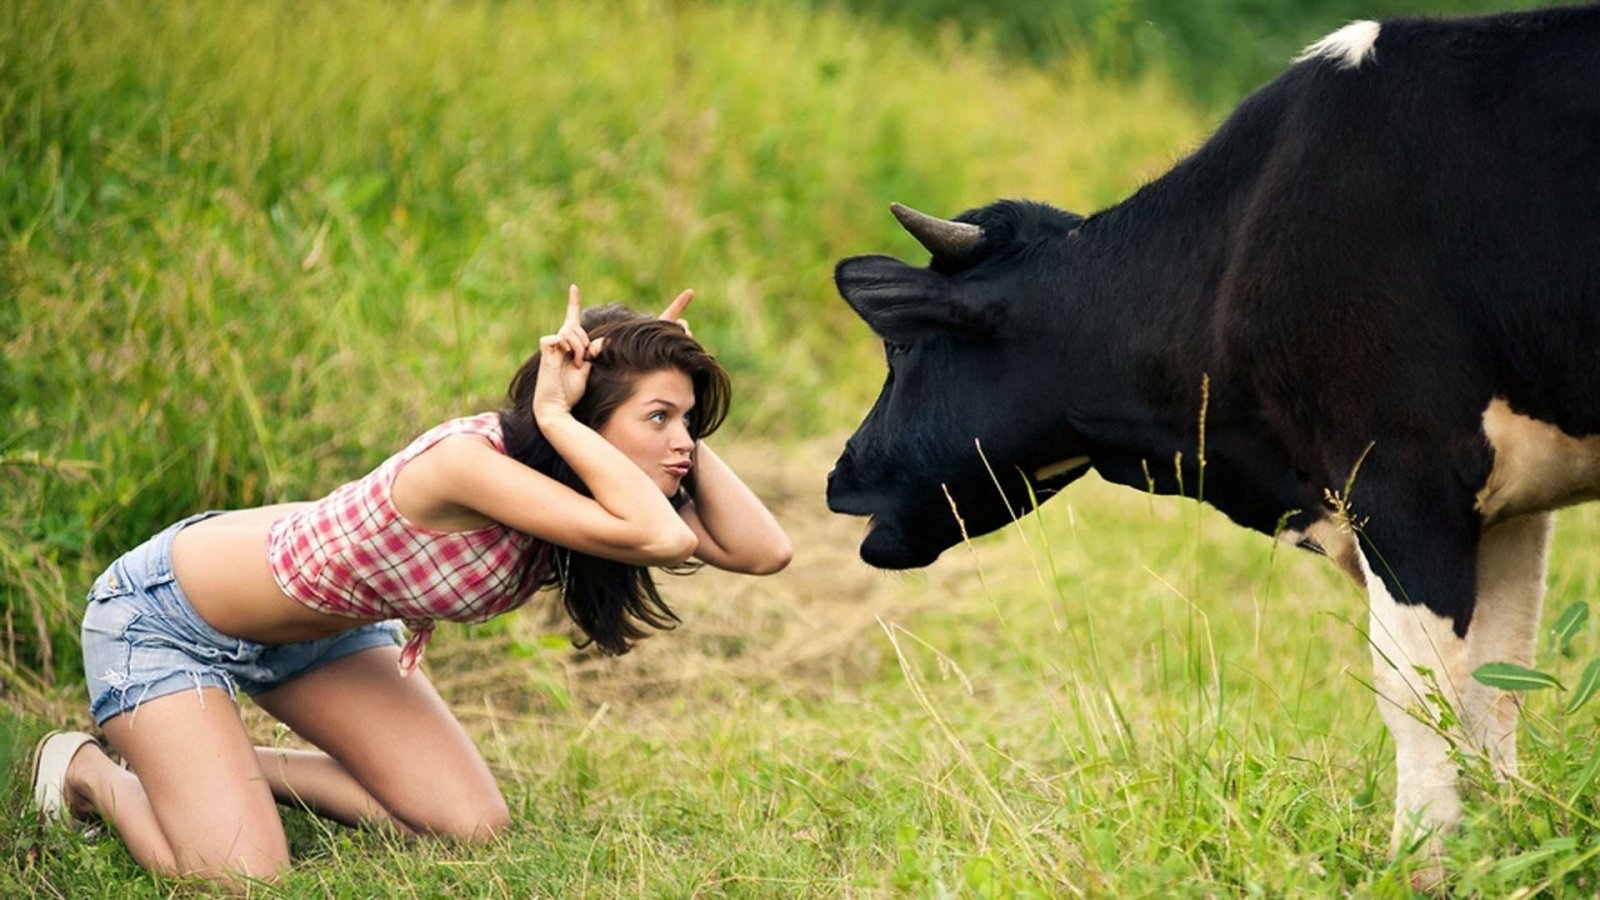 Cow man sexphotos sexual photo